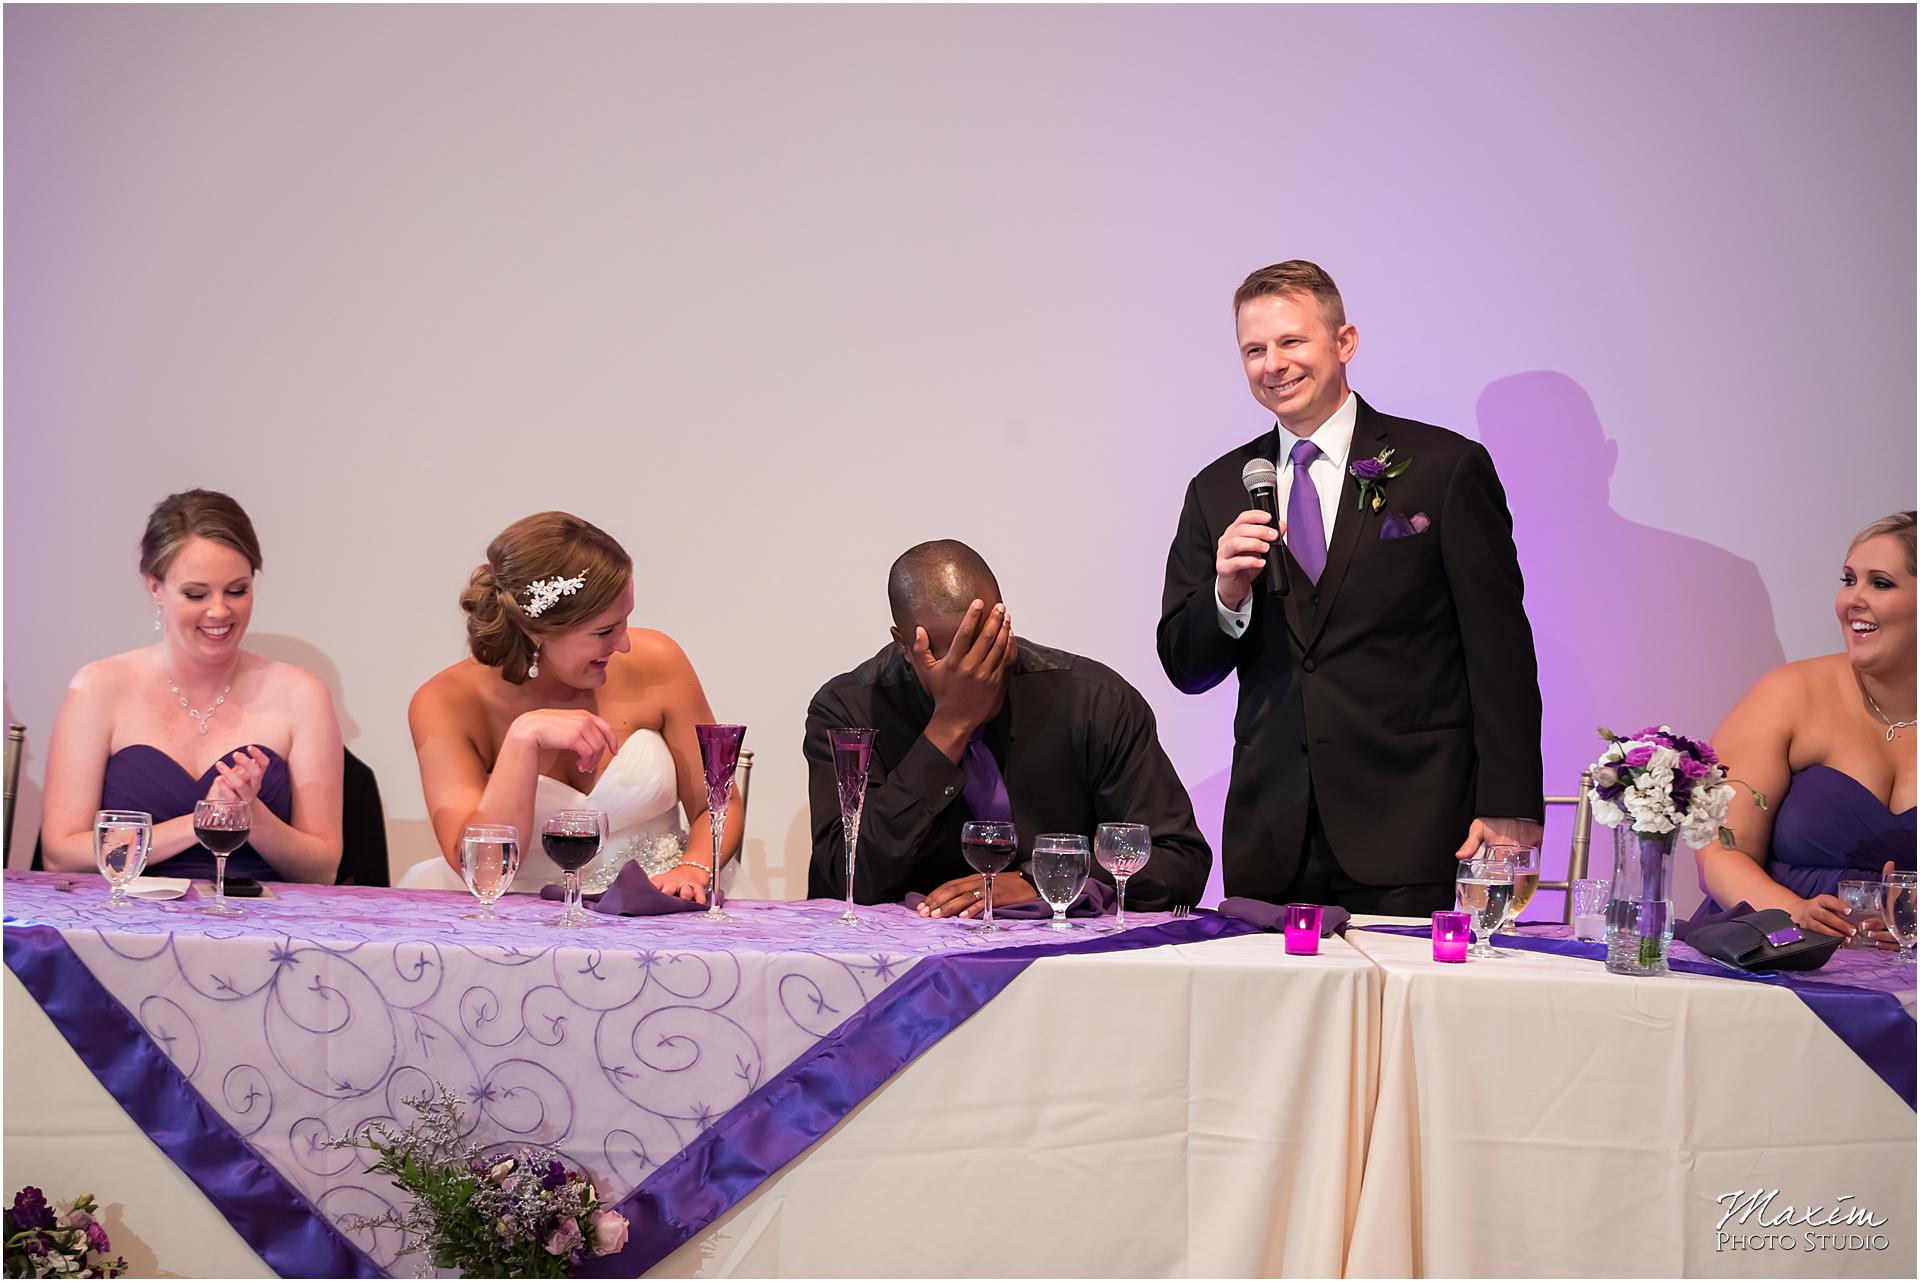 The Center Cincinnati Wedding Reception toast